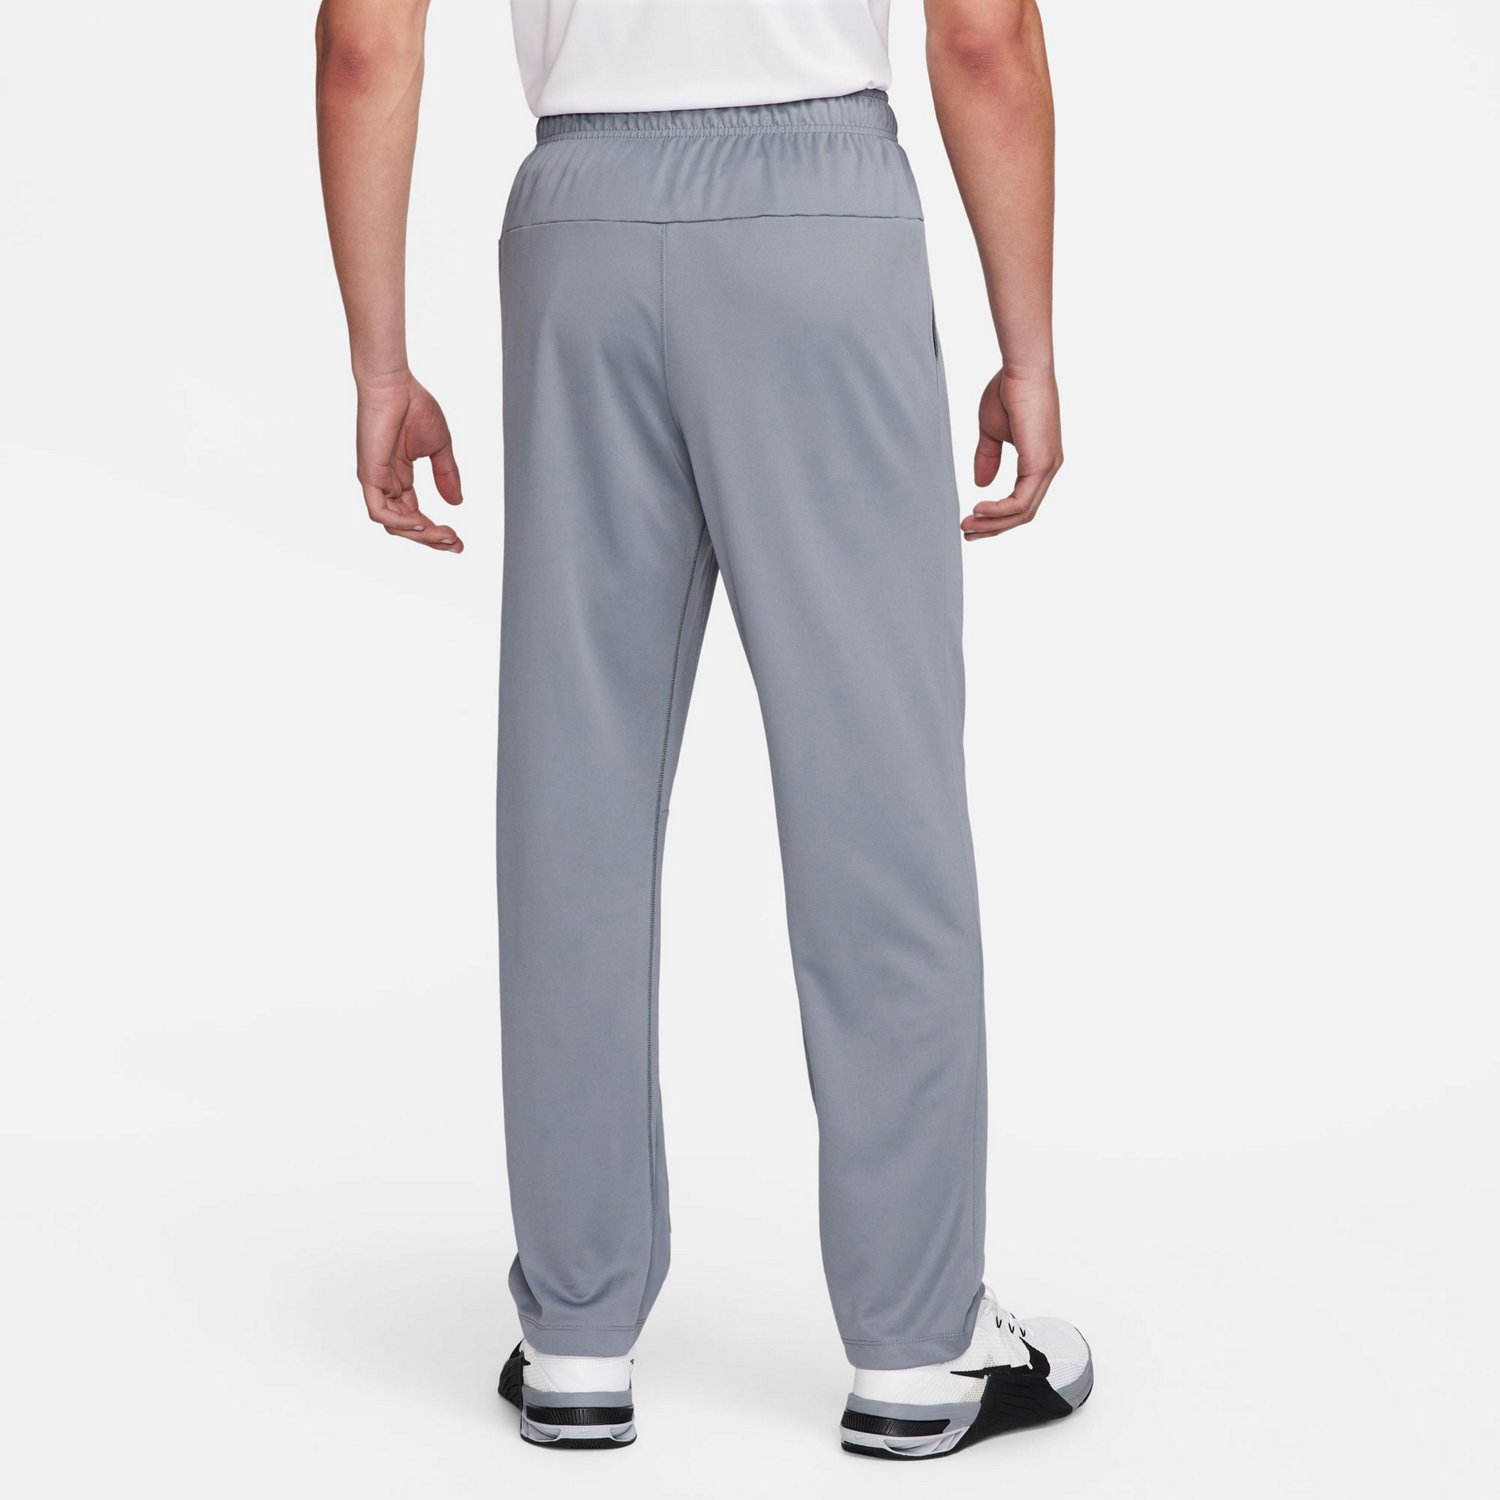 Nike Men's Dri-FIT Totality Fitness Pants